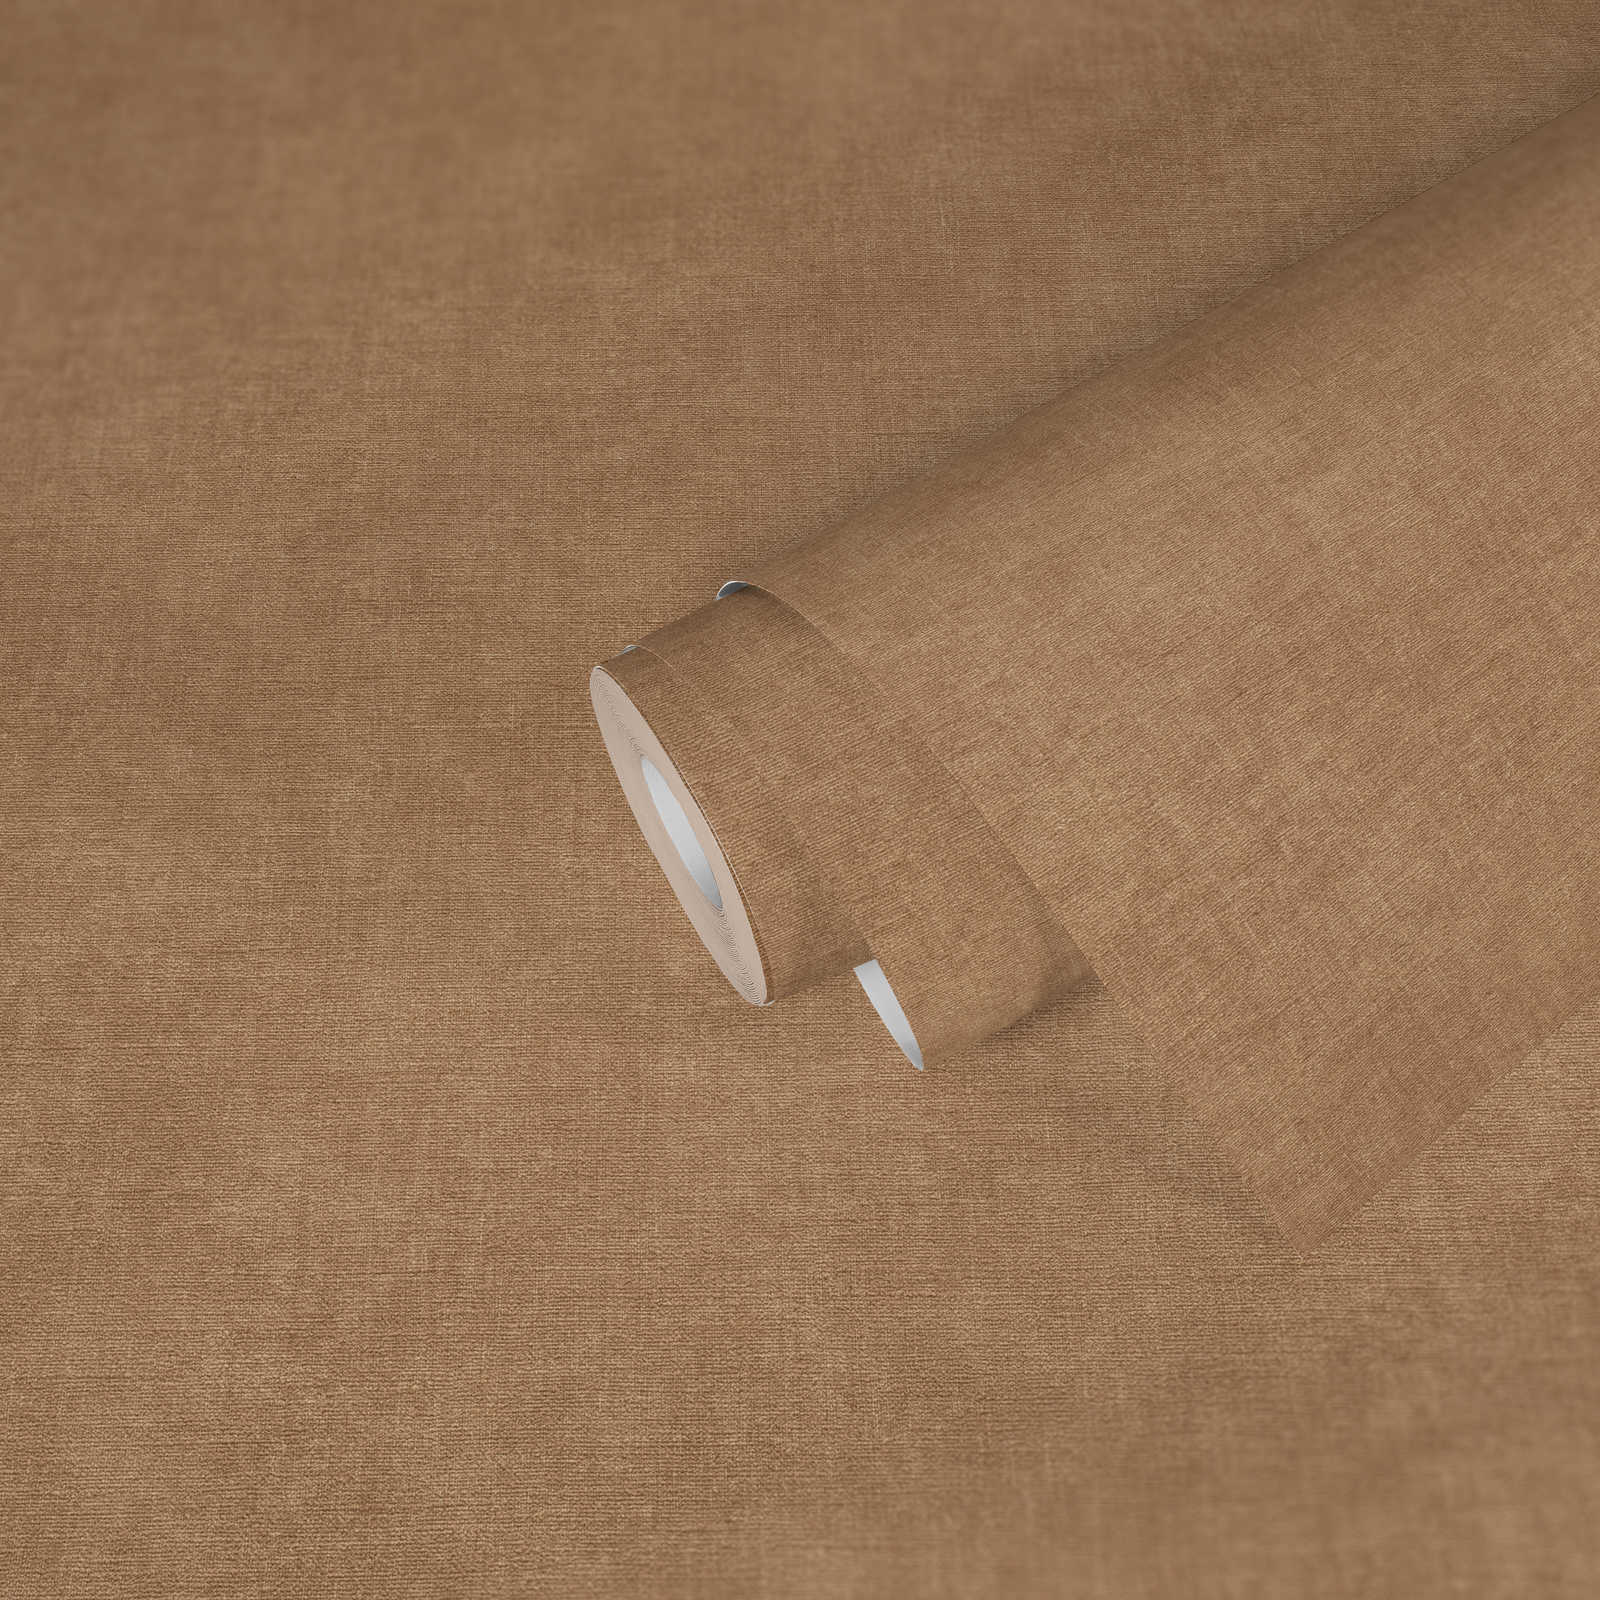             Eenheidsbehang met lichte textuur in textiellook - bruin, beige
        